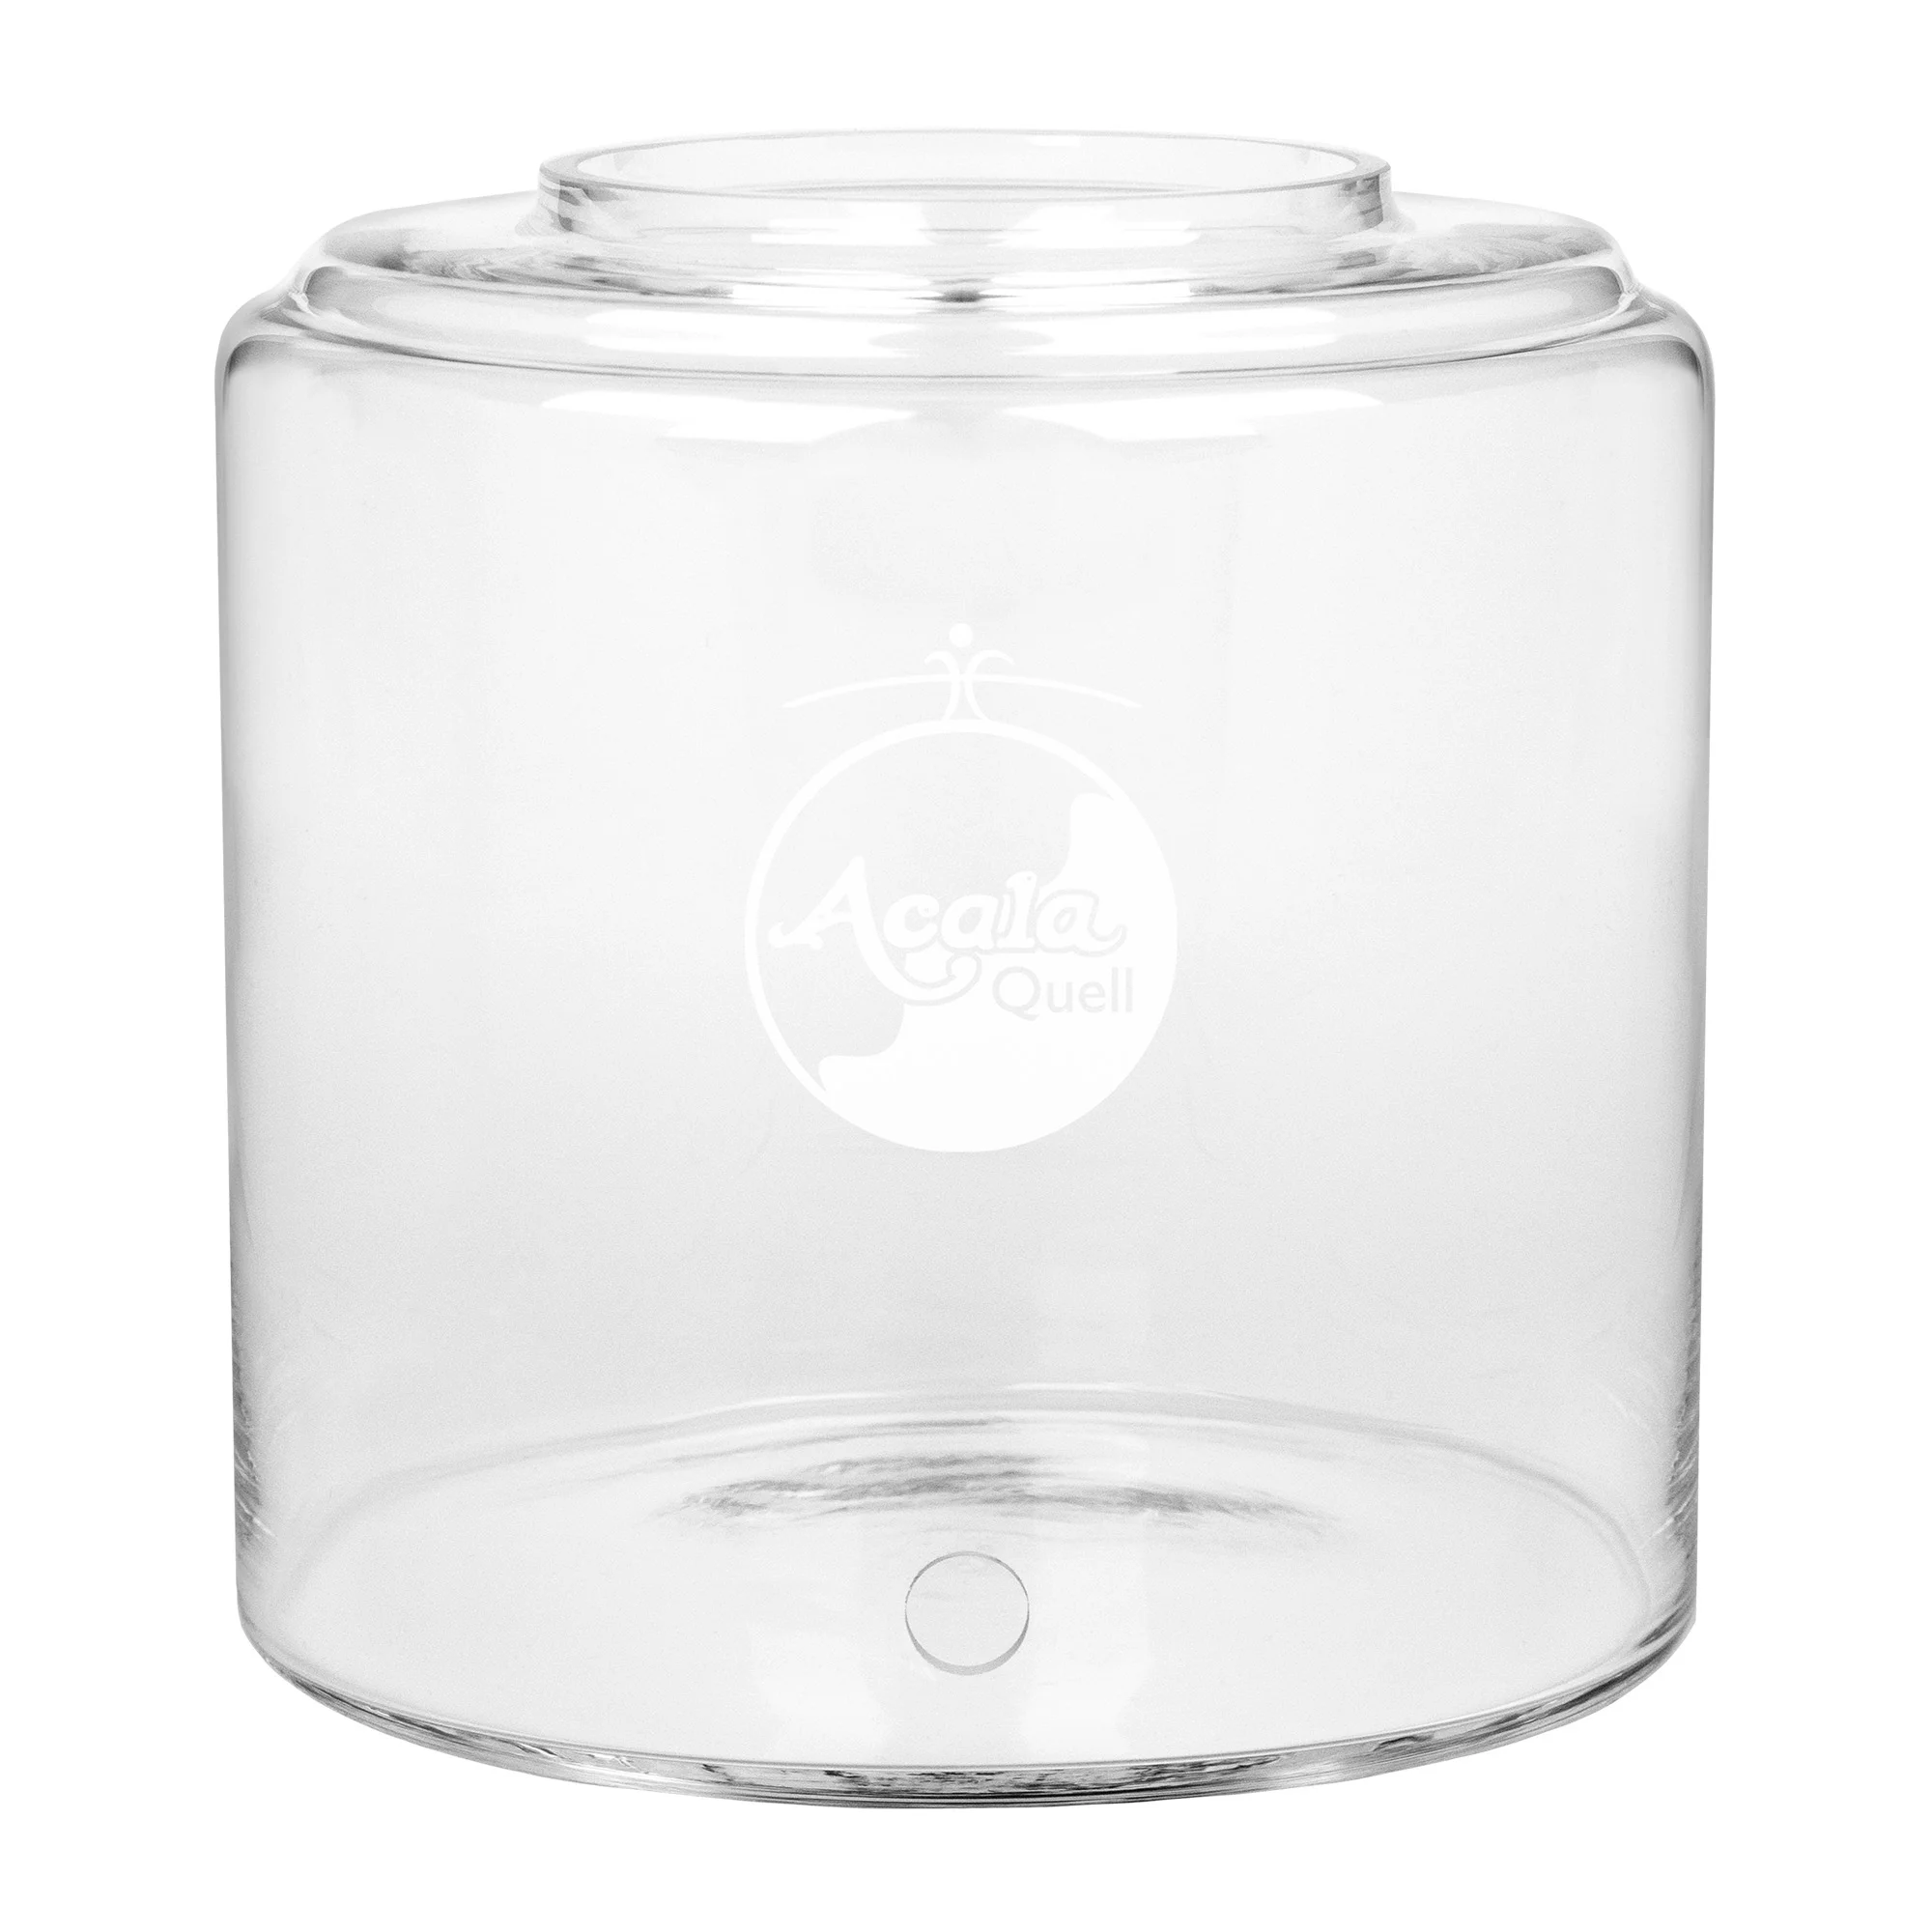 Zu sehen ist ein 8L Glastank für die Acala Stand Wasserfilter Smart, Luna und Advanced in kristallklar vor weißem Hintergrund. Er hat ein Bohrloch für den Wasserhahn und darüber sieht man das AcalaQuell Logo in weiß, welches auf den Tank graviert ist.